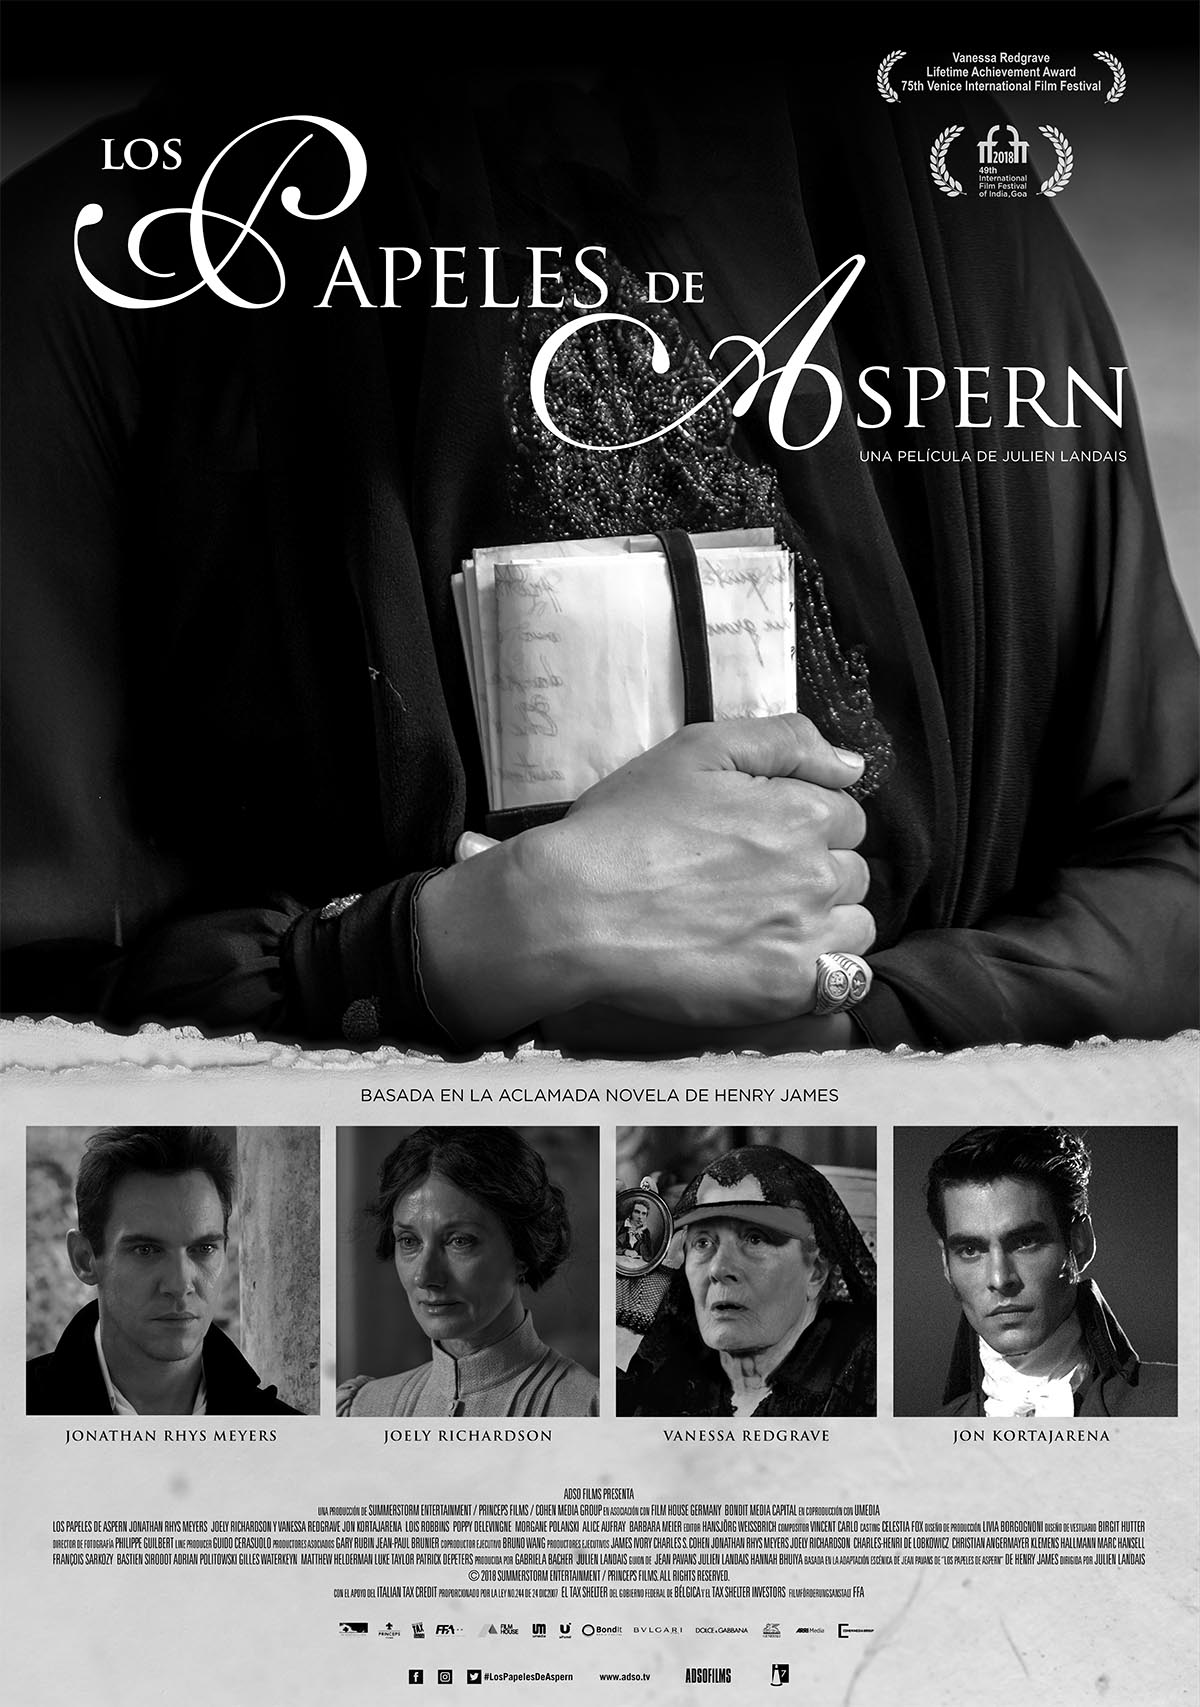 ‘Los papeles de Aspern’ se estrenará en cine de España